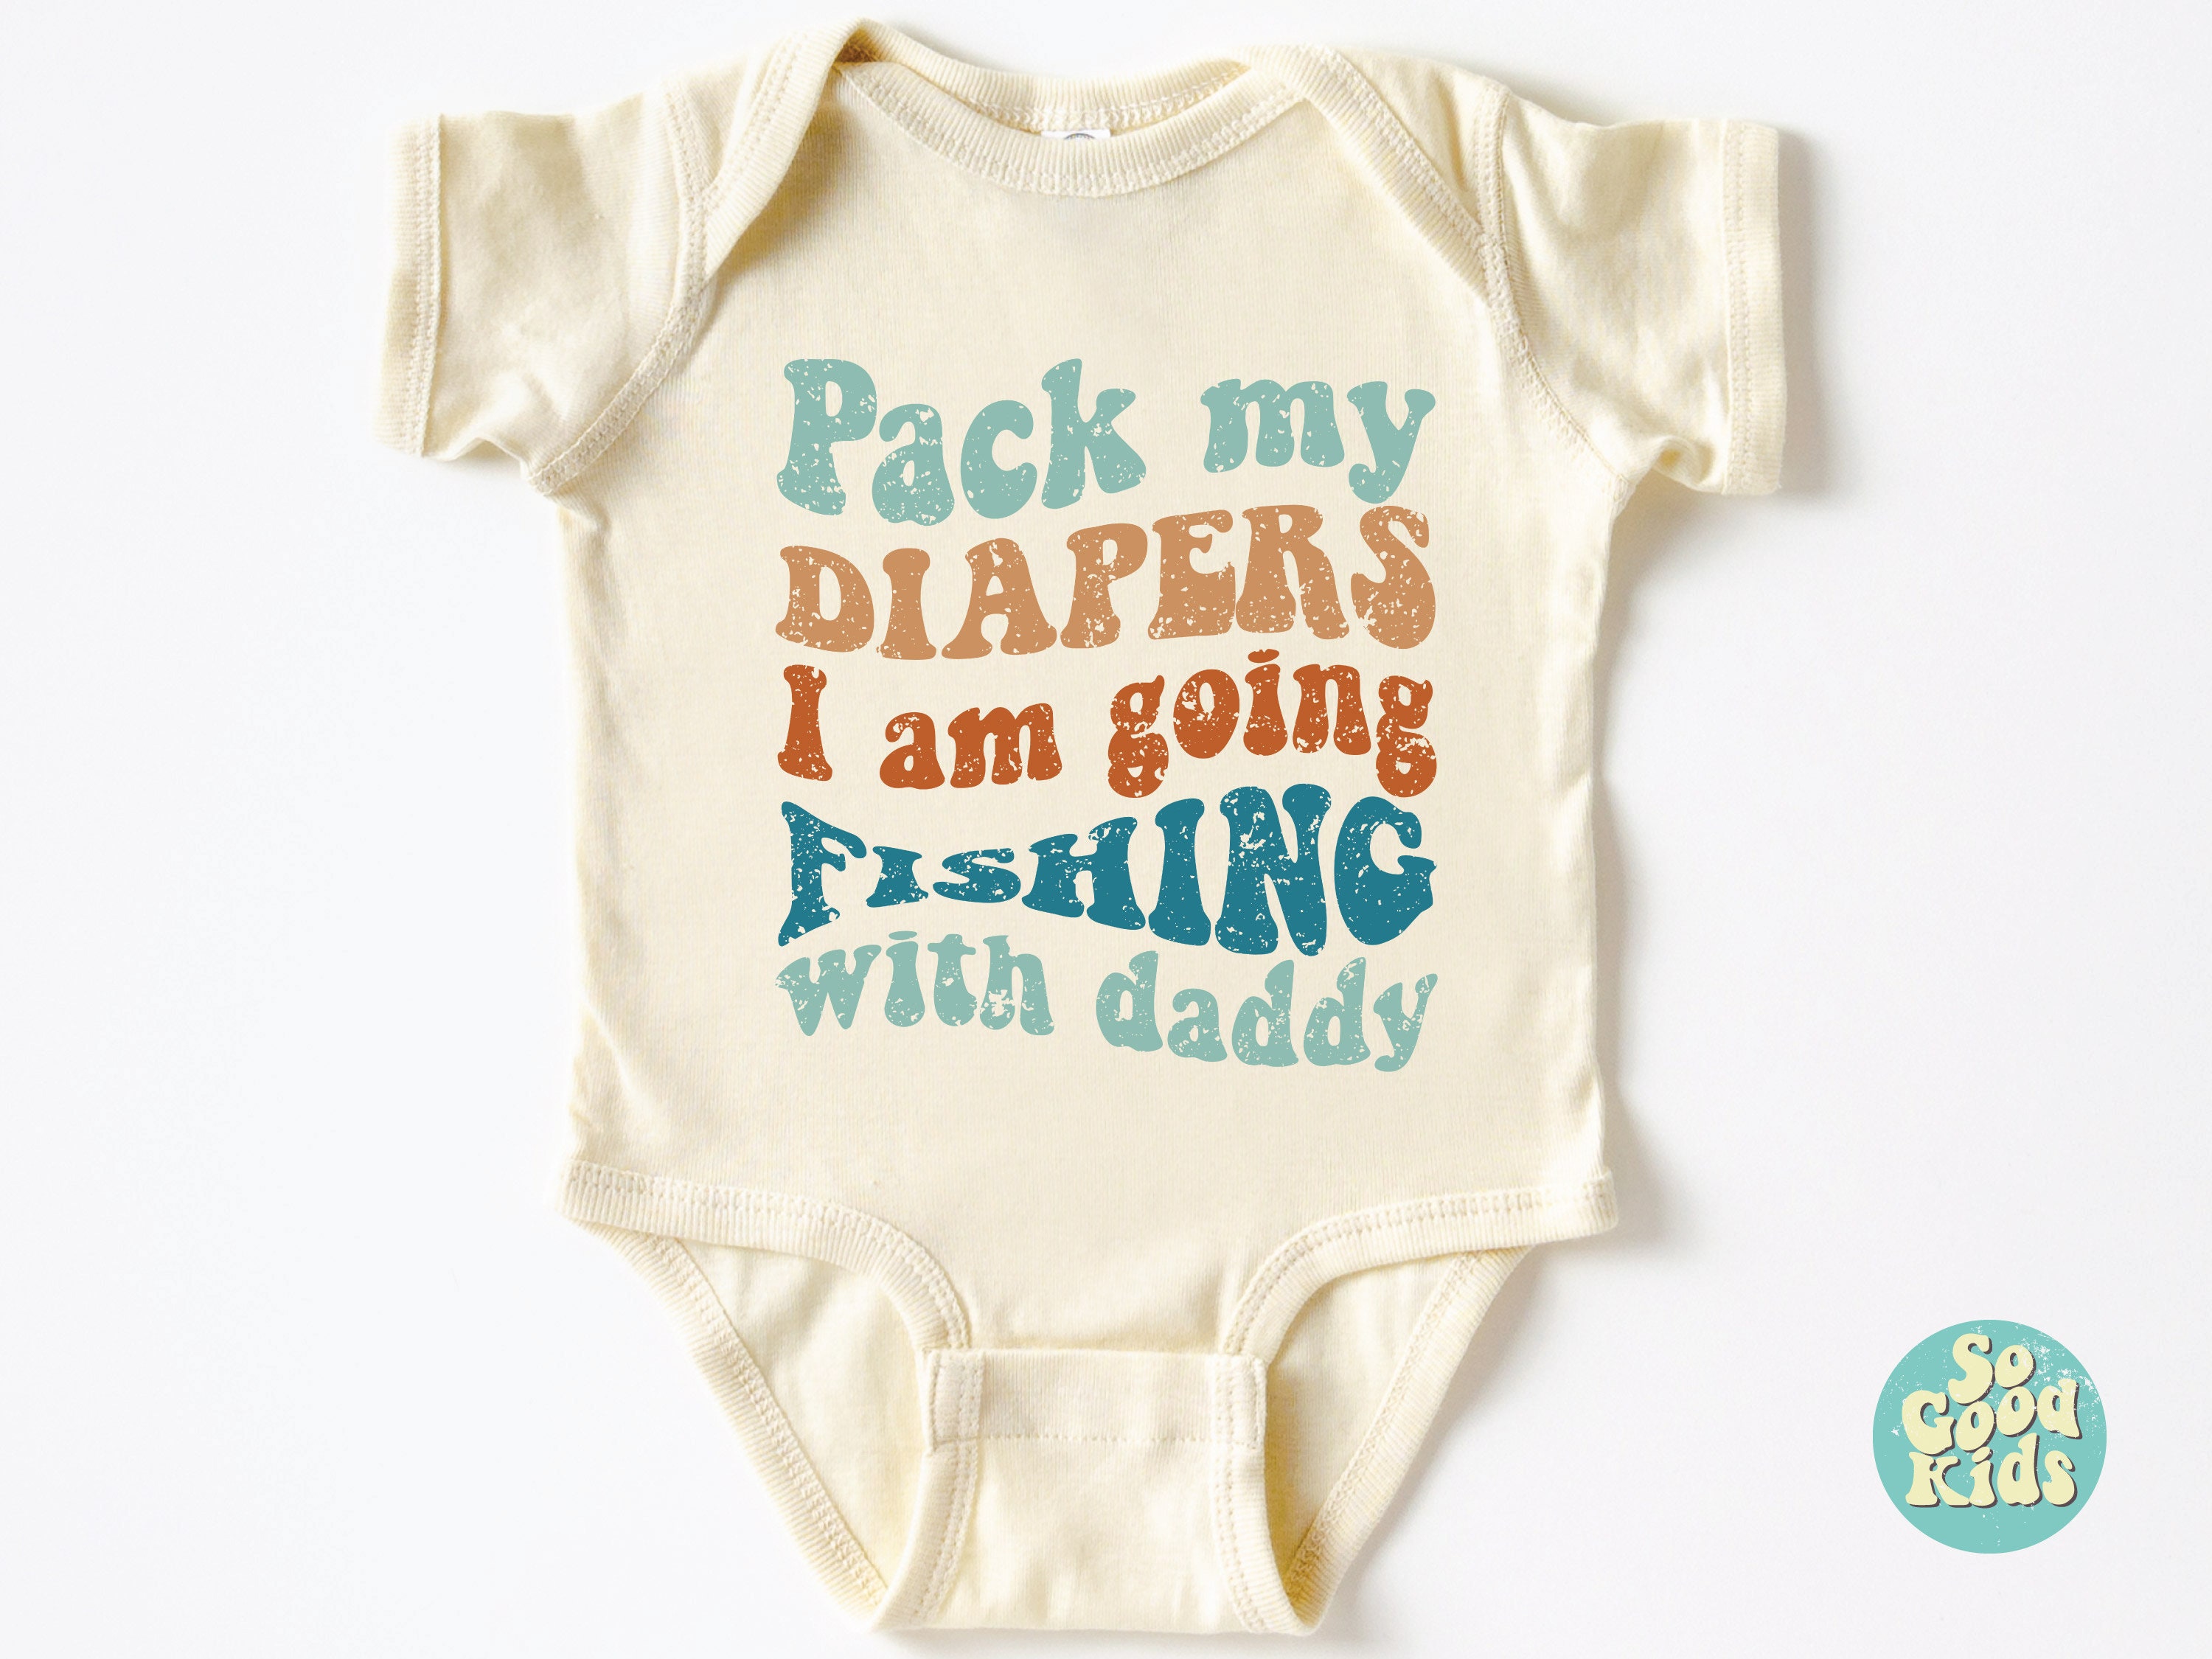 Baby Fishing Shirt 